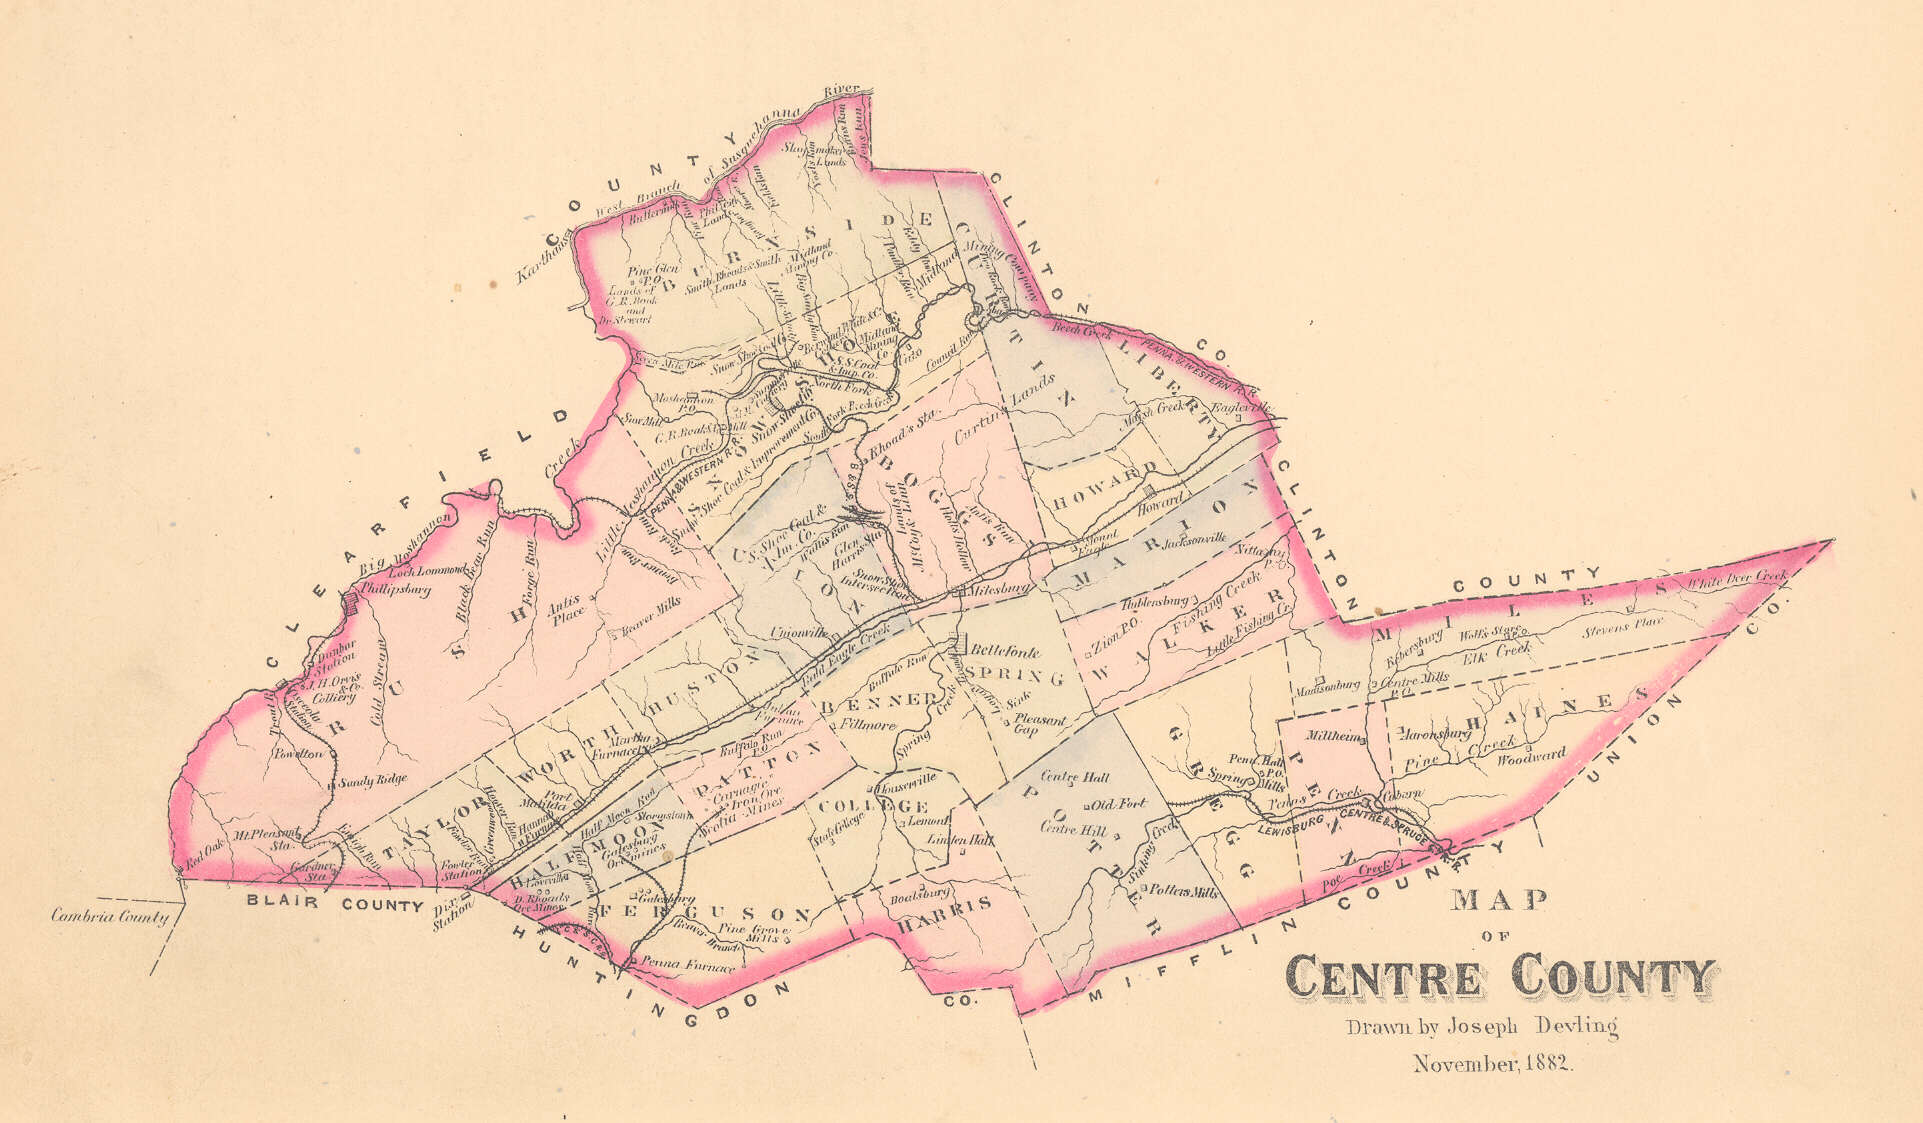 Centre County, 1882